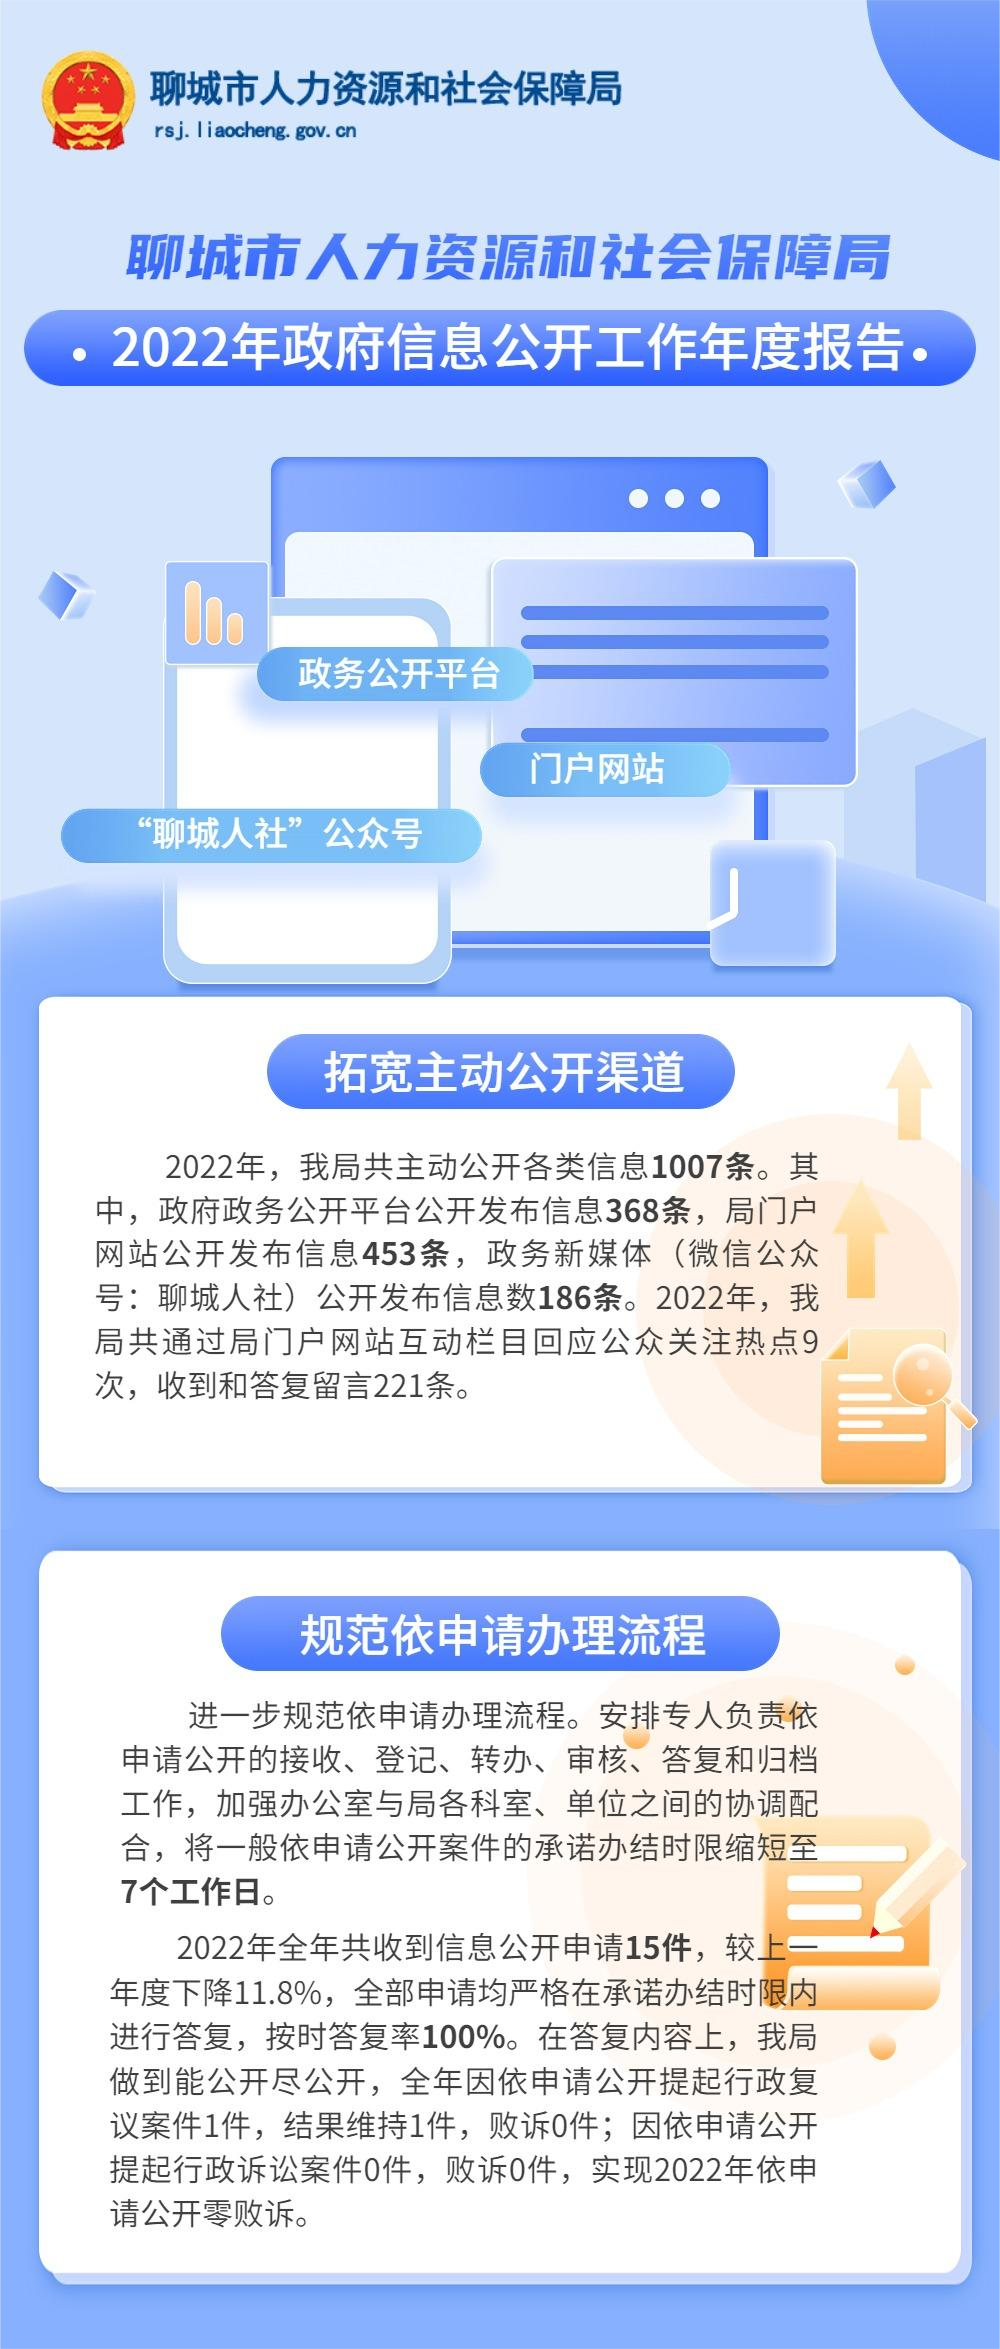 聊城市人力资源和社会保障局2022年政府信息公开工作年度报告图解(1).png